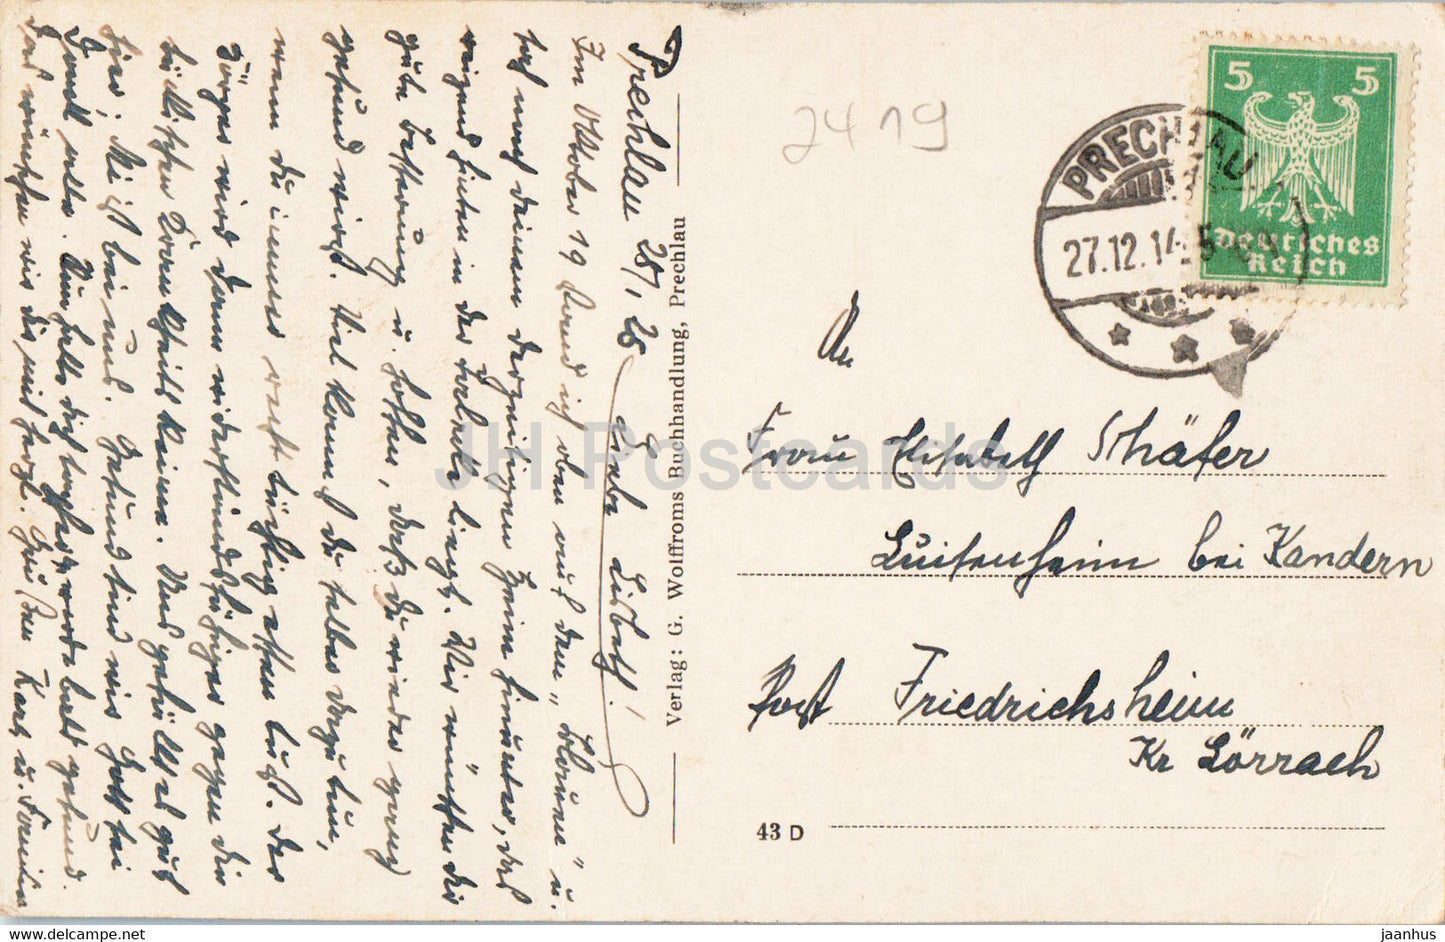 Prechlau - Partie am Ziethener See - carte postale ancienne - Pologne - utilisé